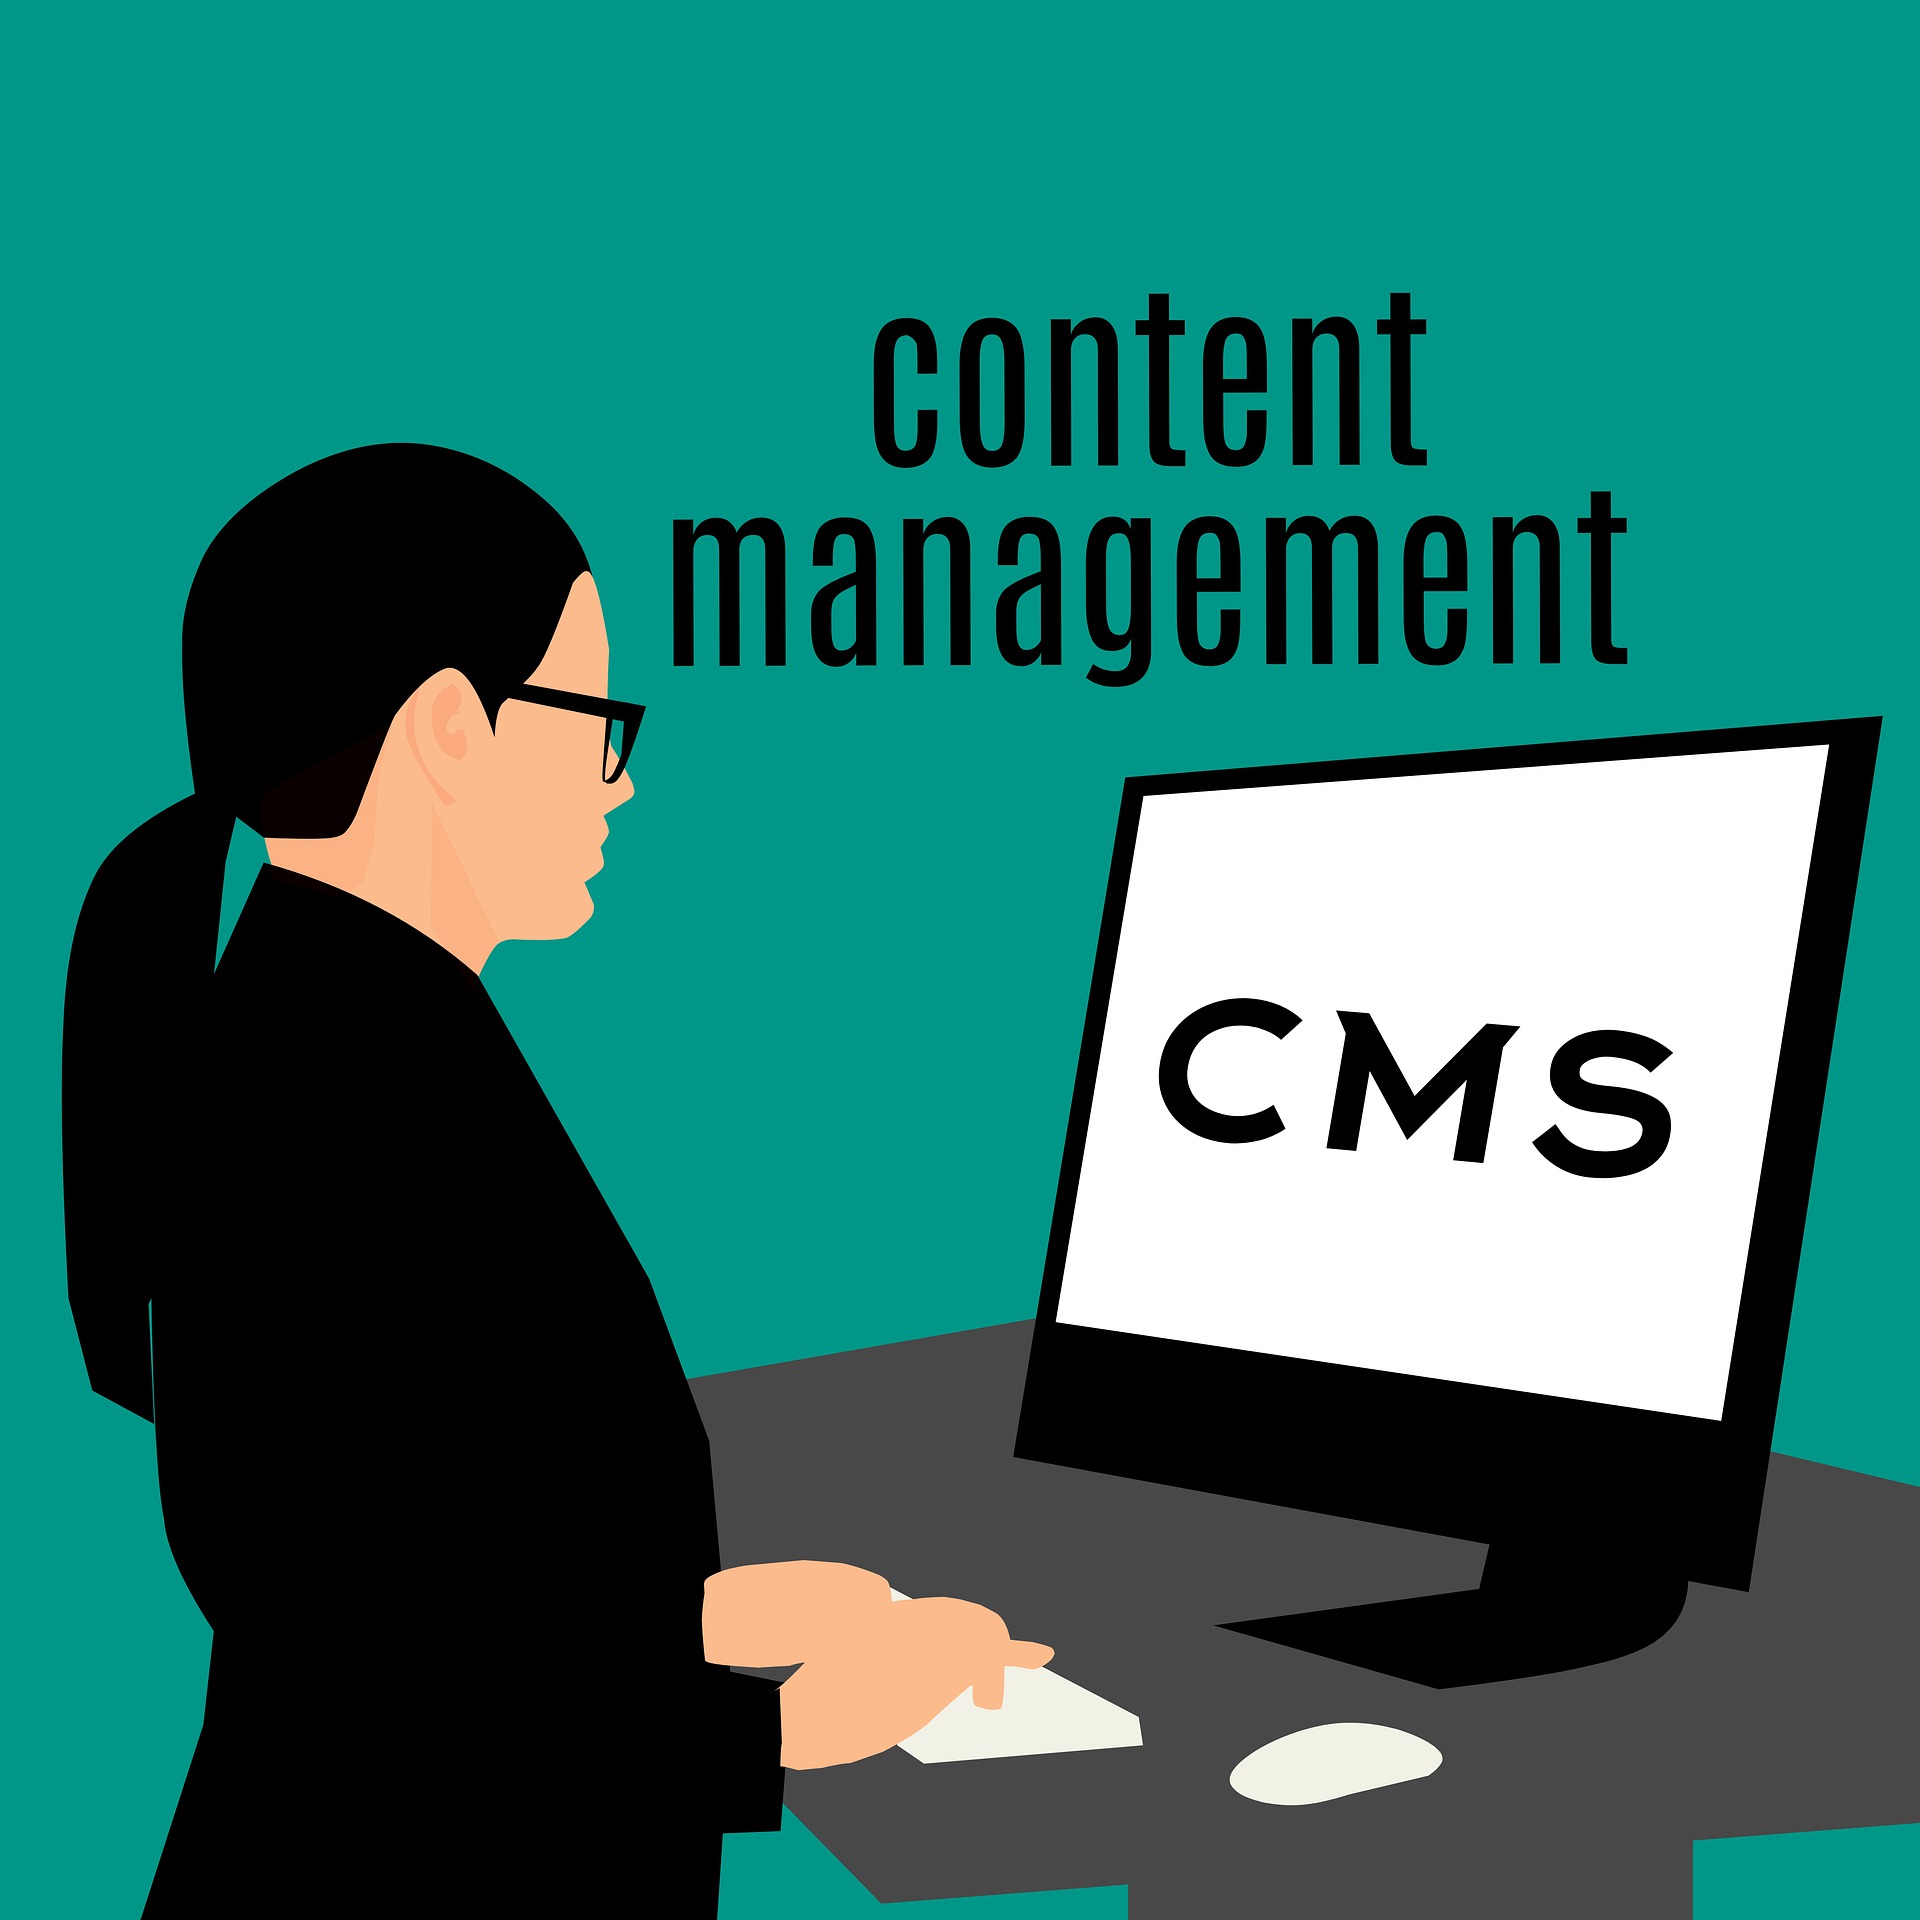 Content management, CMS, 